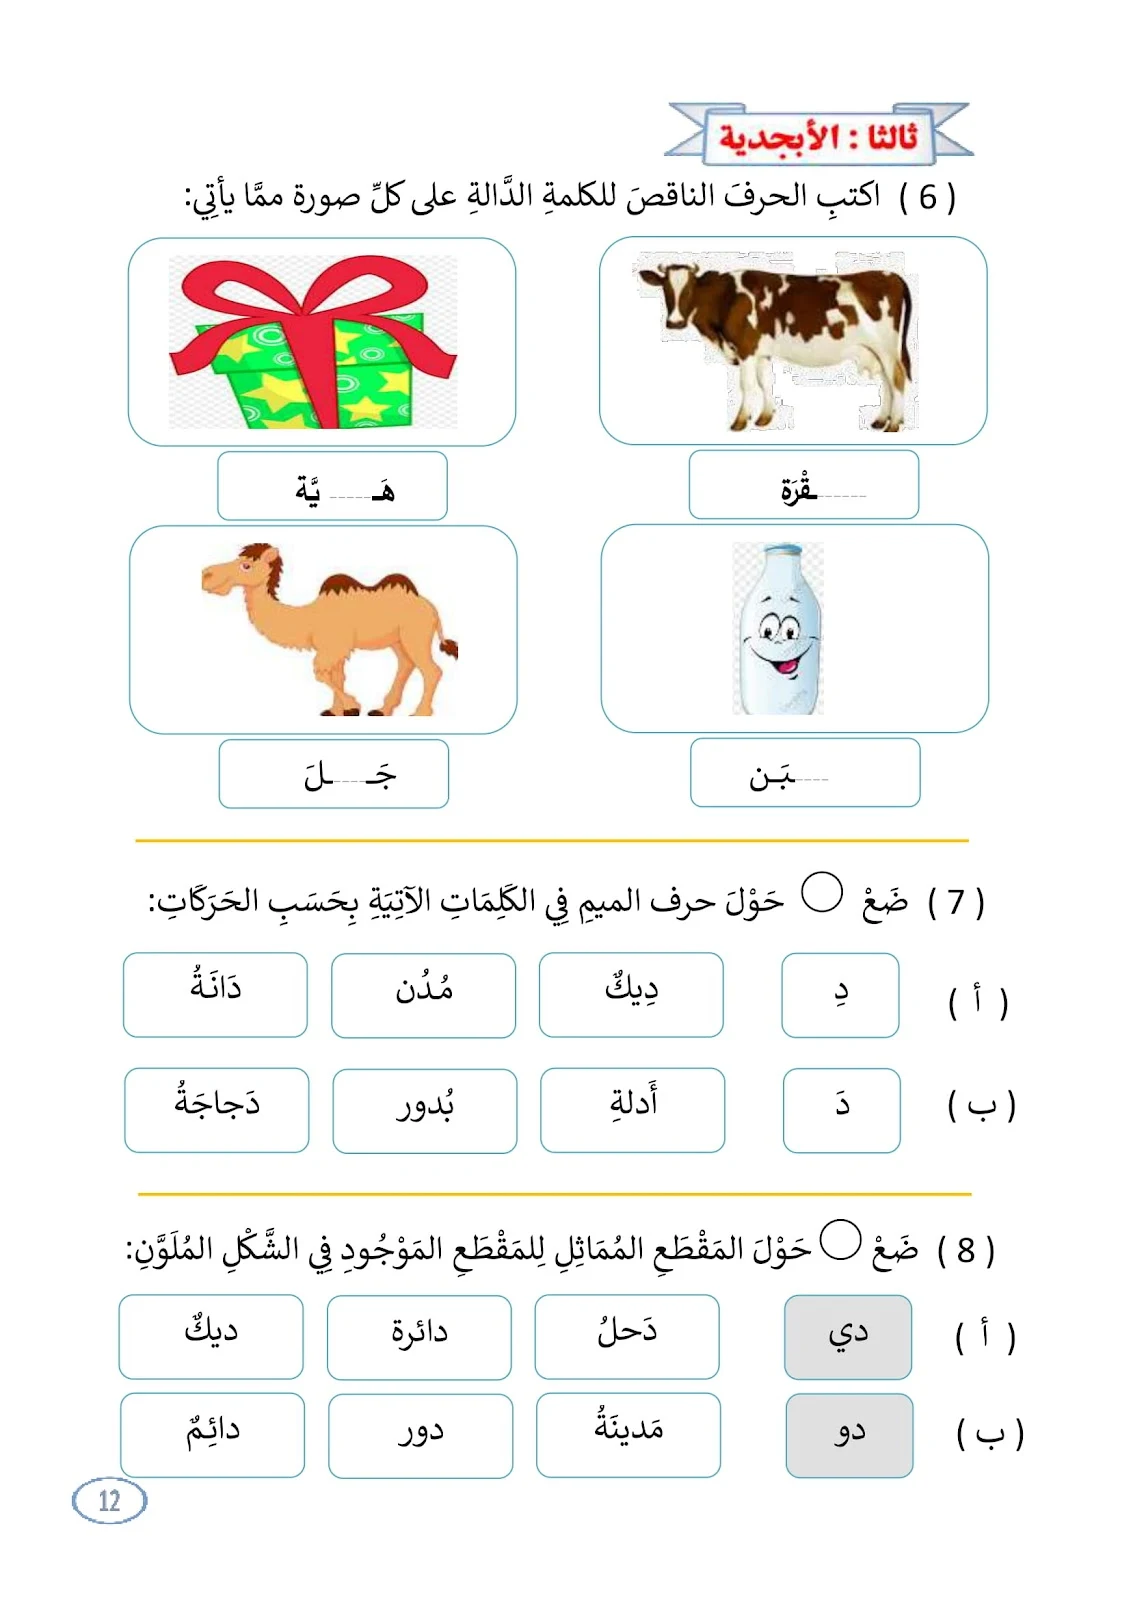 افضل مذكرة مراجعة للغة العربية الصف الأول pdf تحميل مباشر